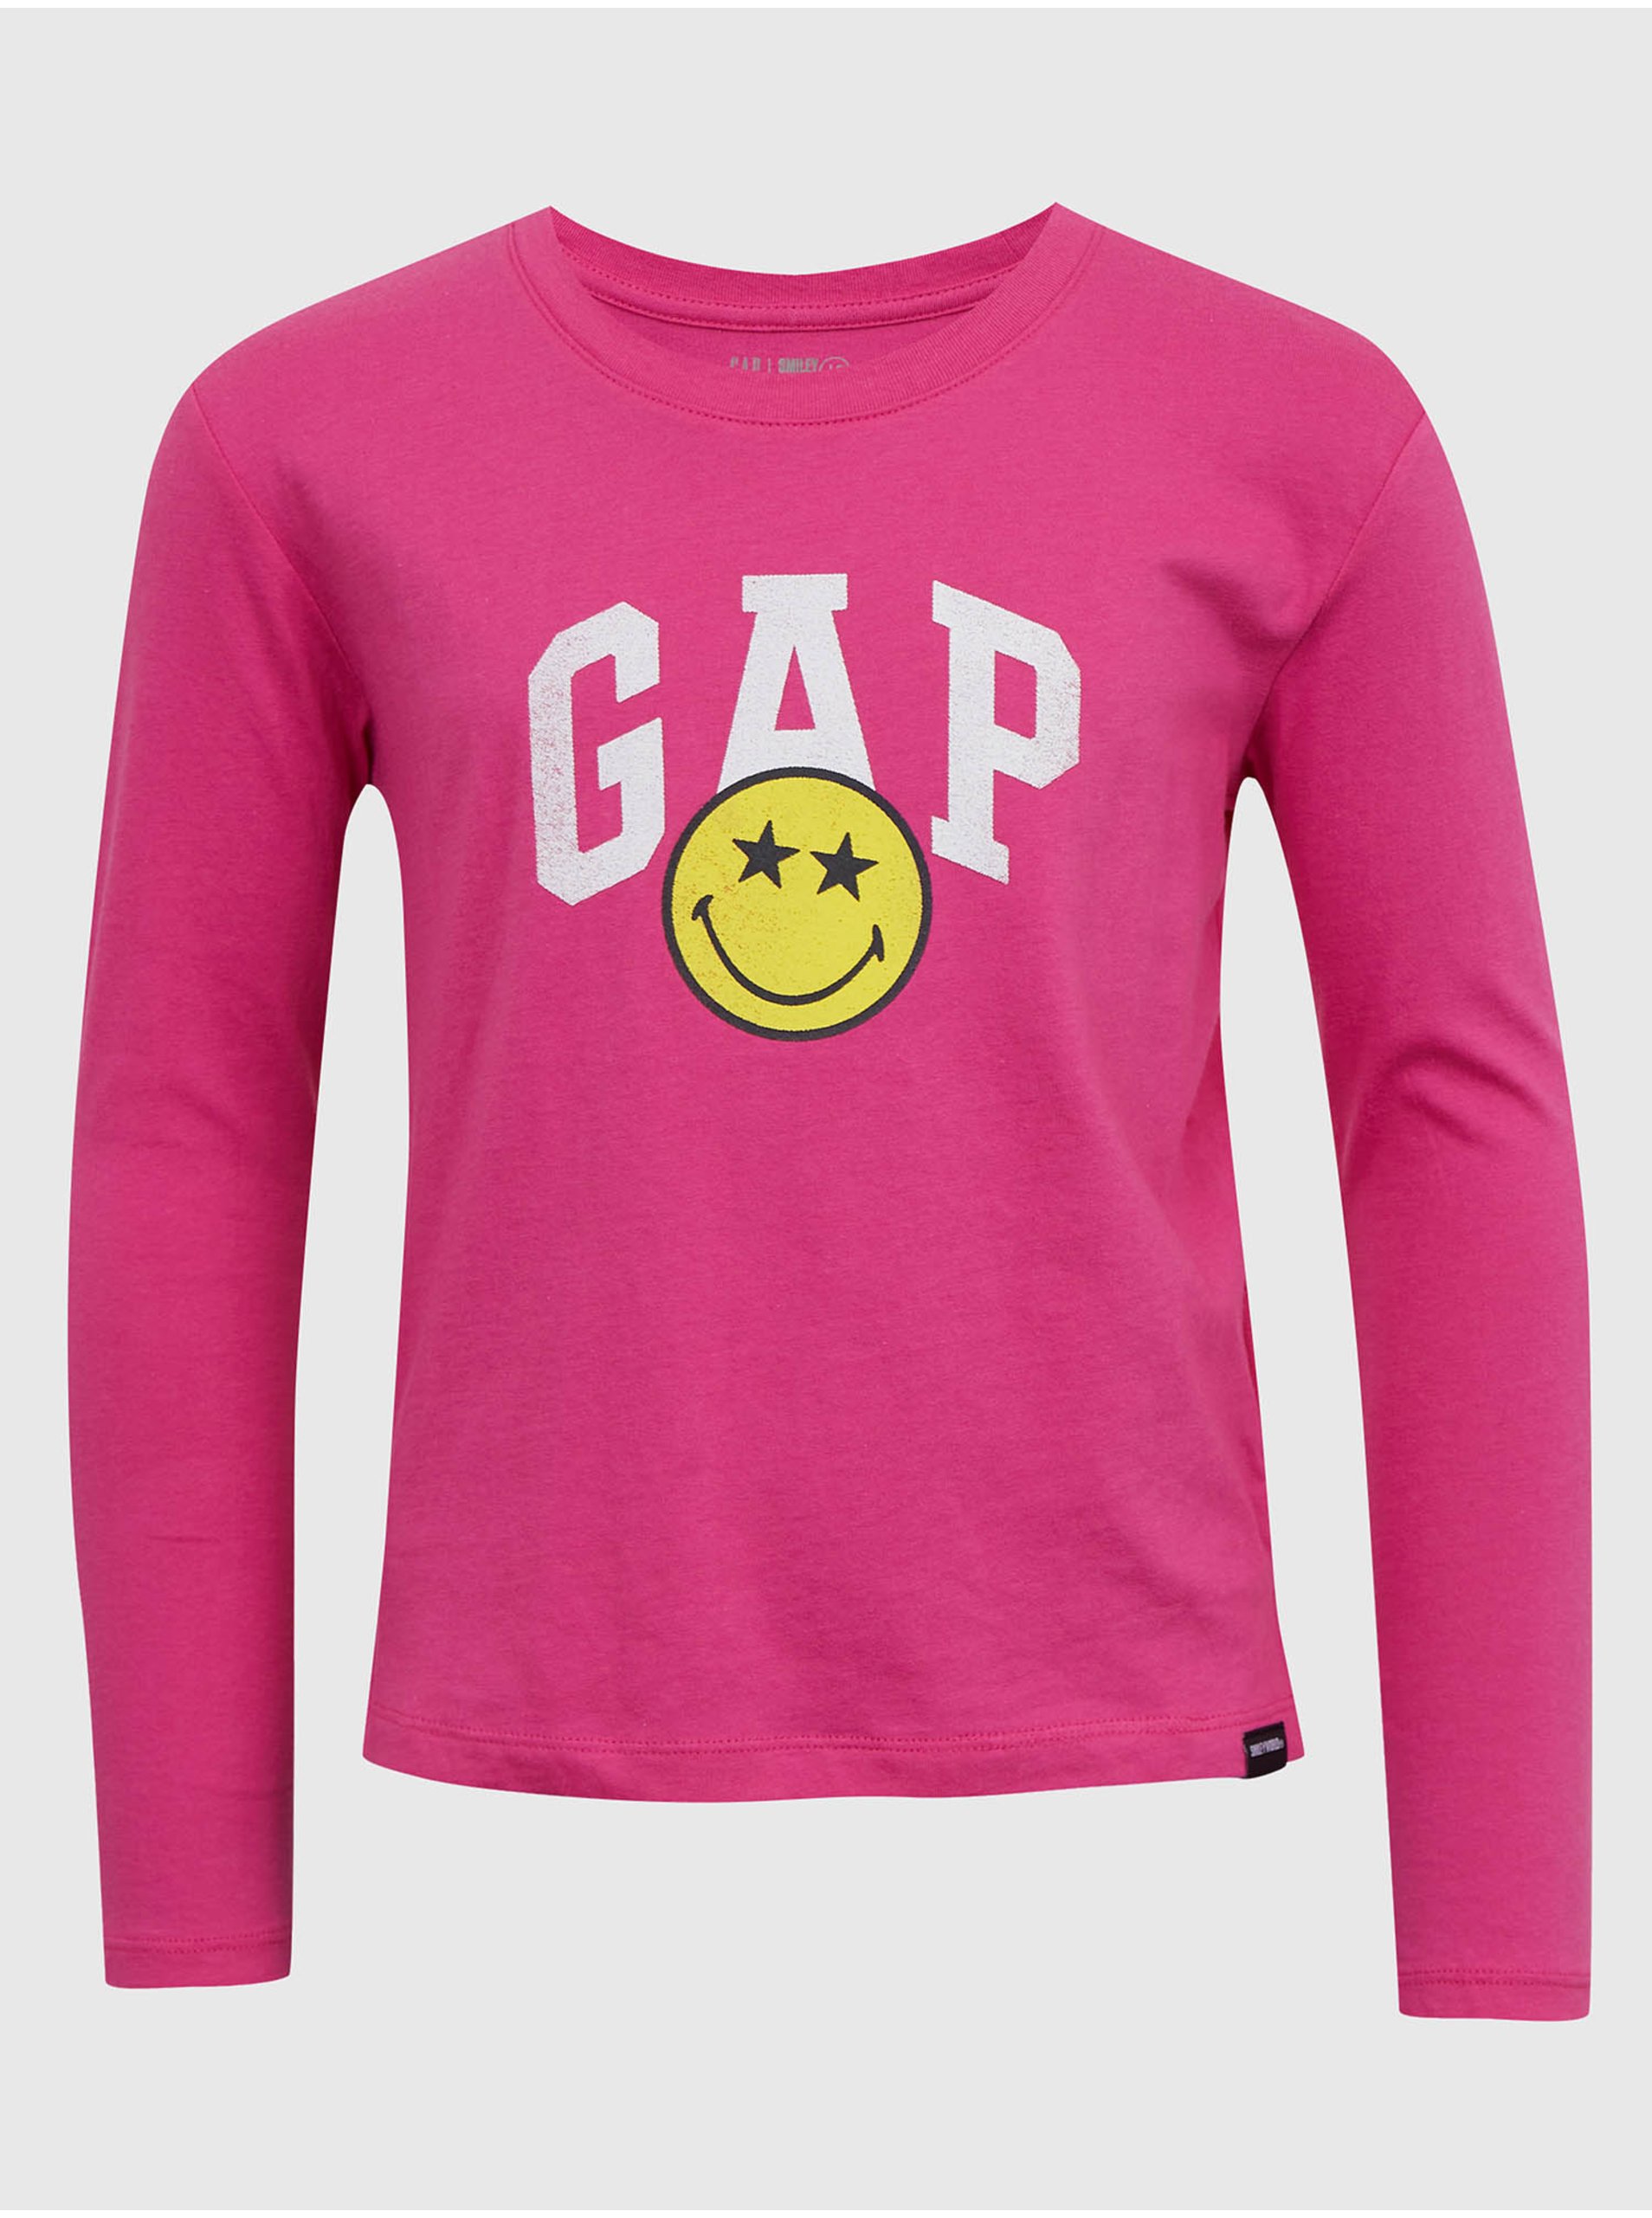 Lacno Tmavoružové dievčenské tričko s potlačou GAP & Smiley®